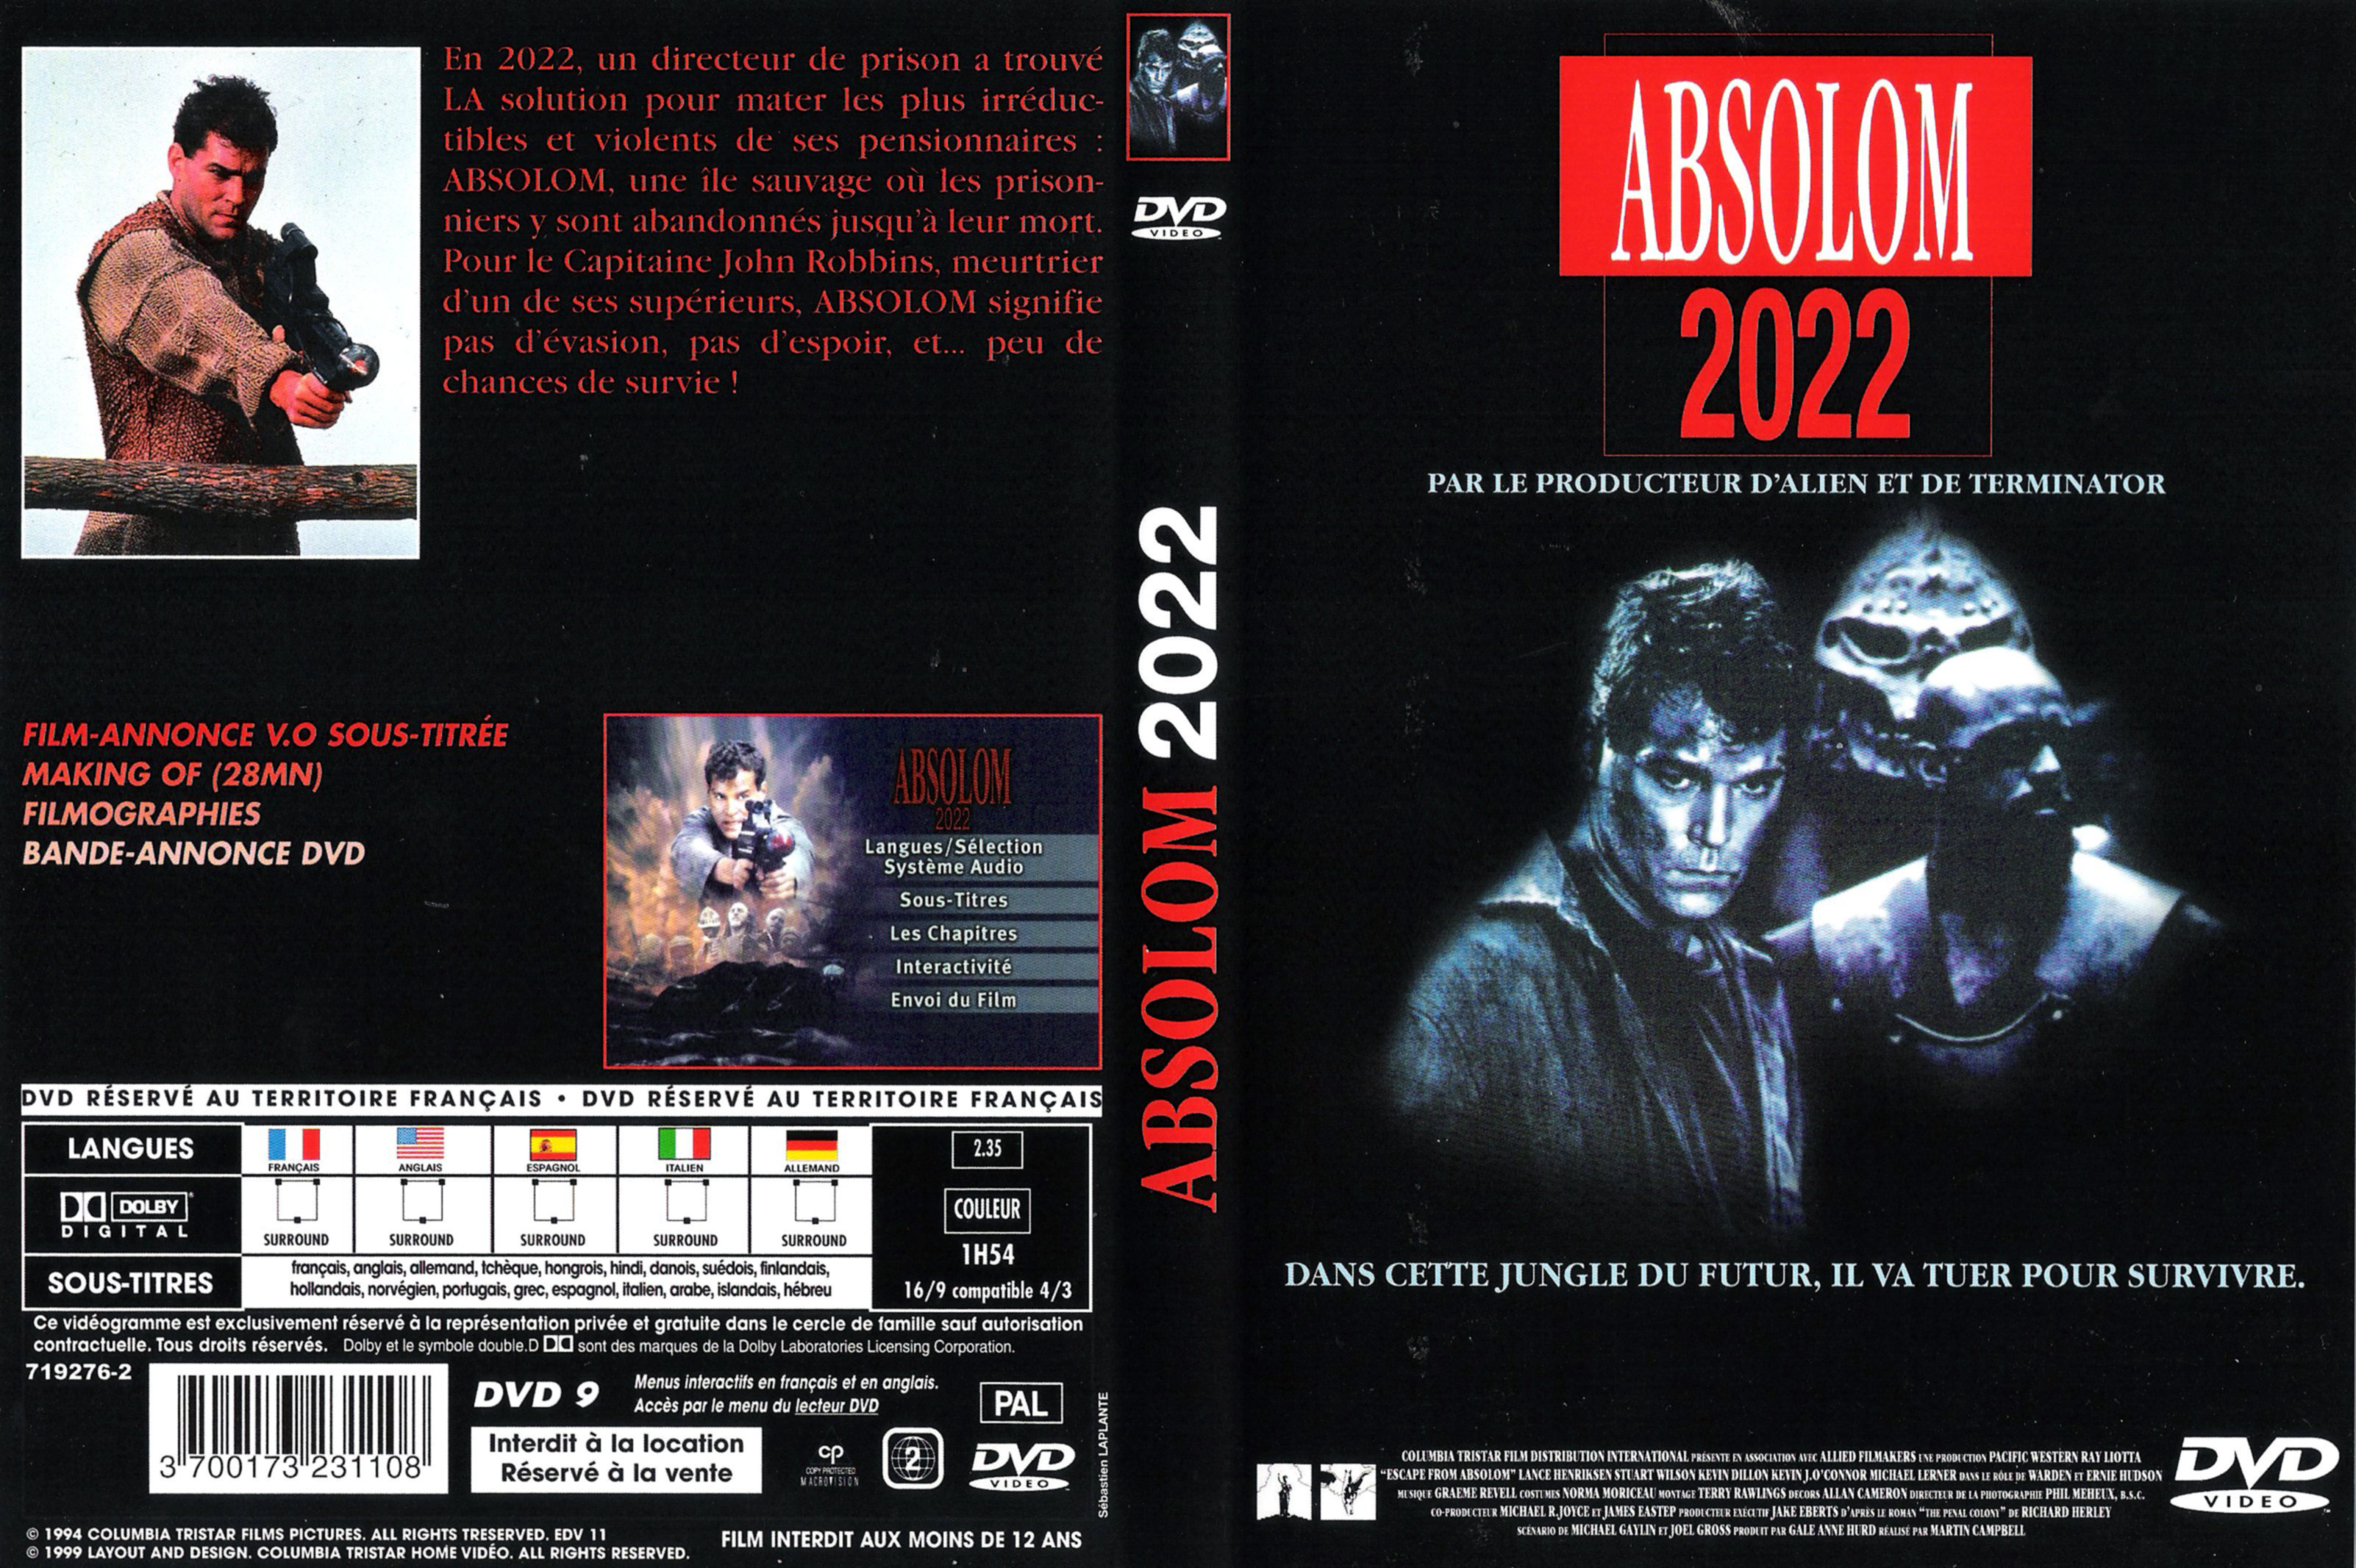 Jaquette DVD Absolom 2022 v3